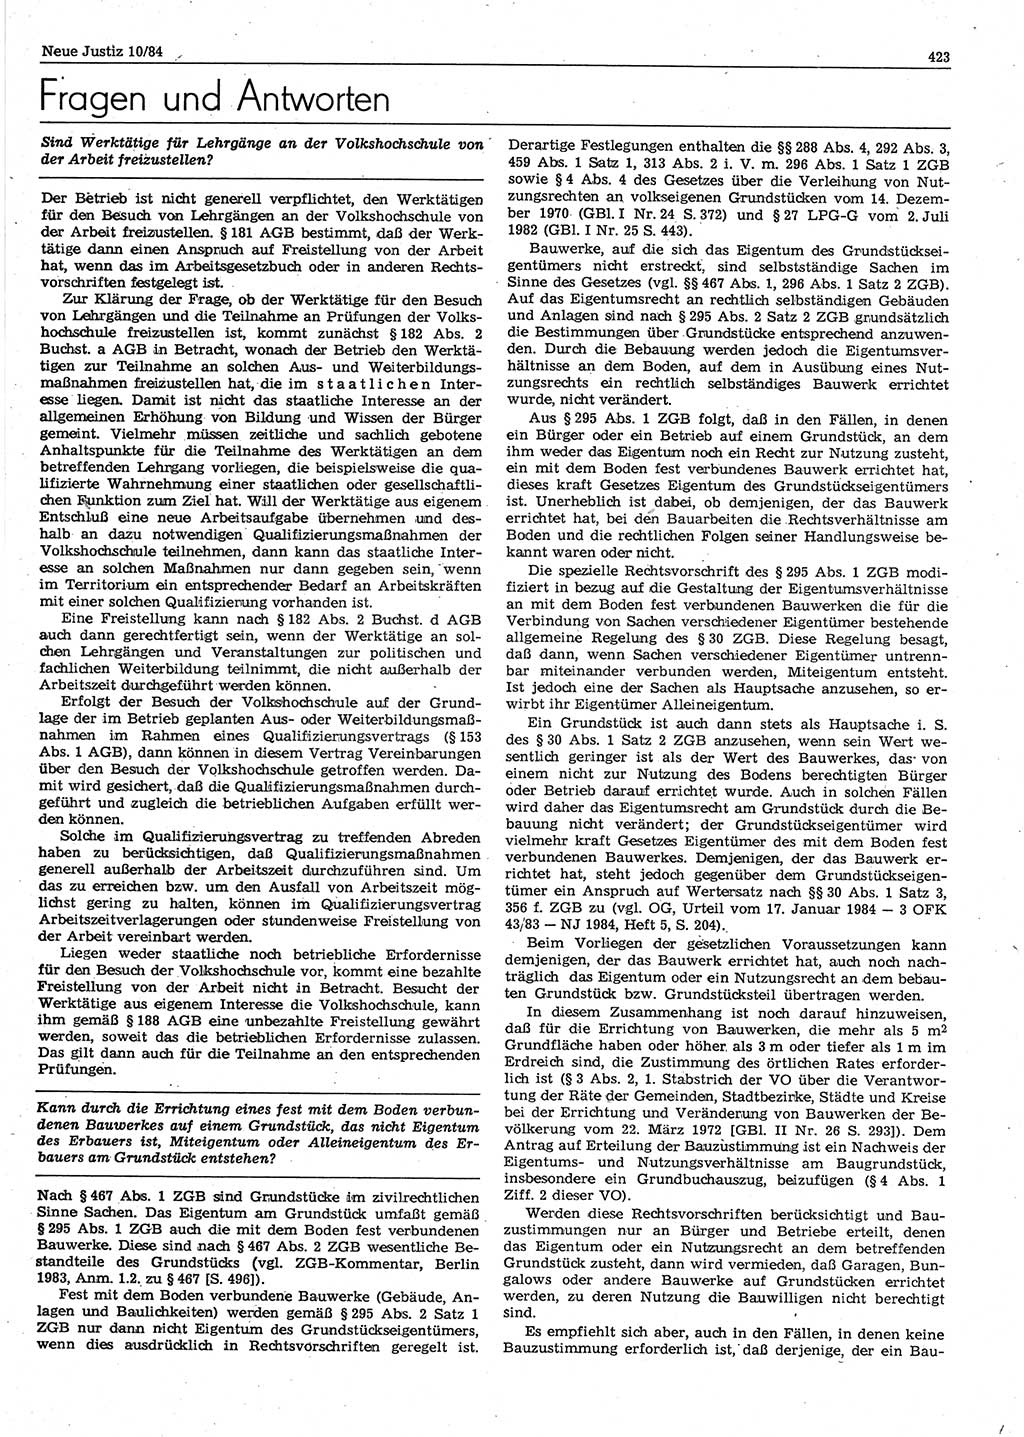 Neue Justiz (NJ), Zeitschrift für sozialistisches Recht und Gesetzlichkeit [Deutsche Demokratische Republik (DDR)], 38. Jahrgang 1984, Seite 423 (NJ DDR 1984, S. 423)